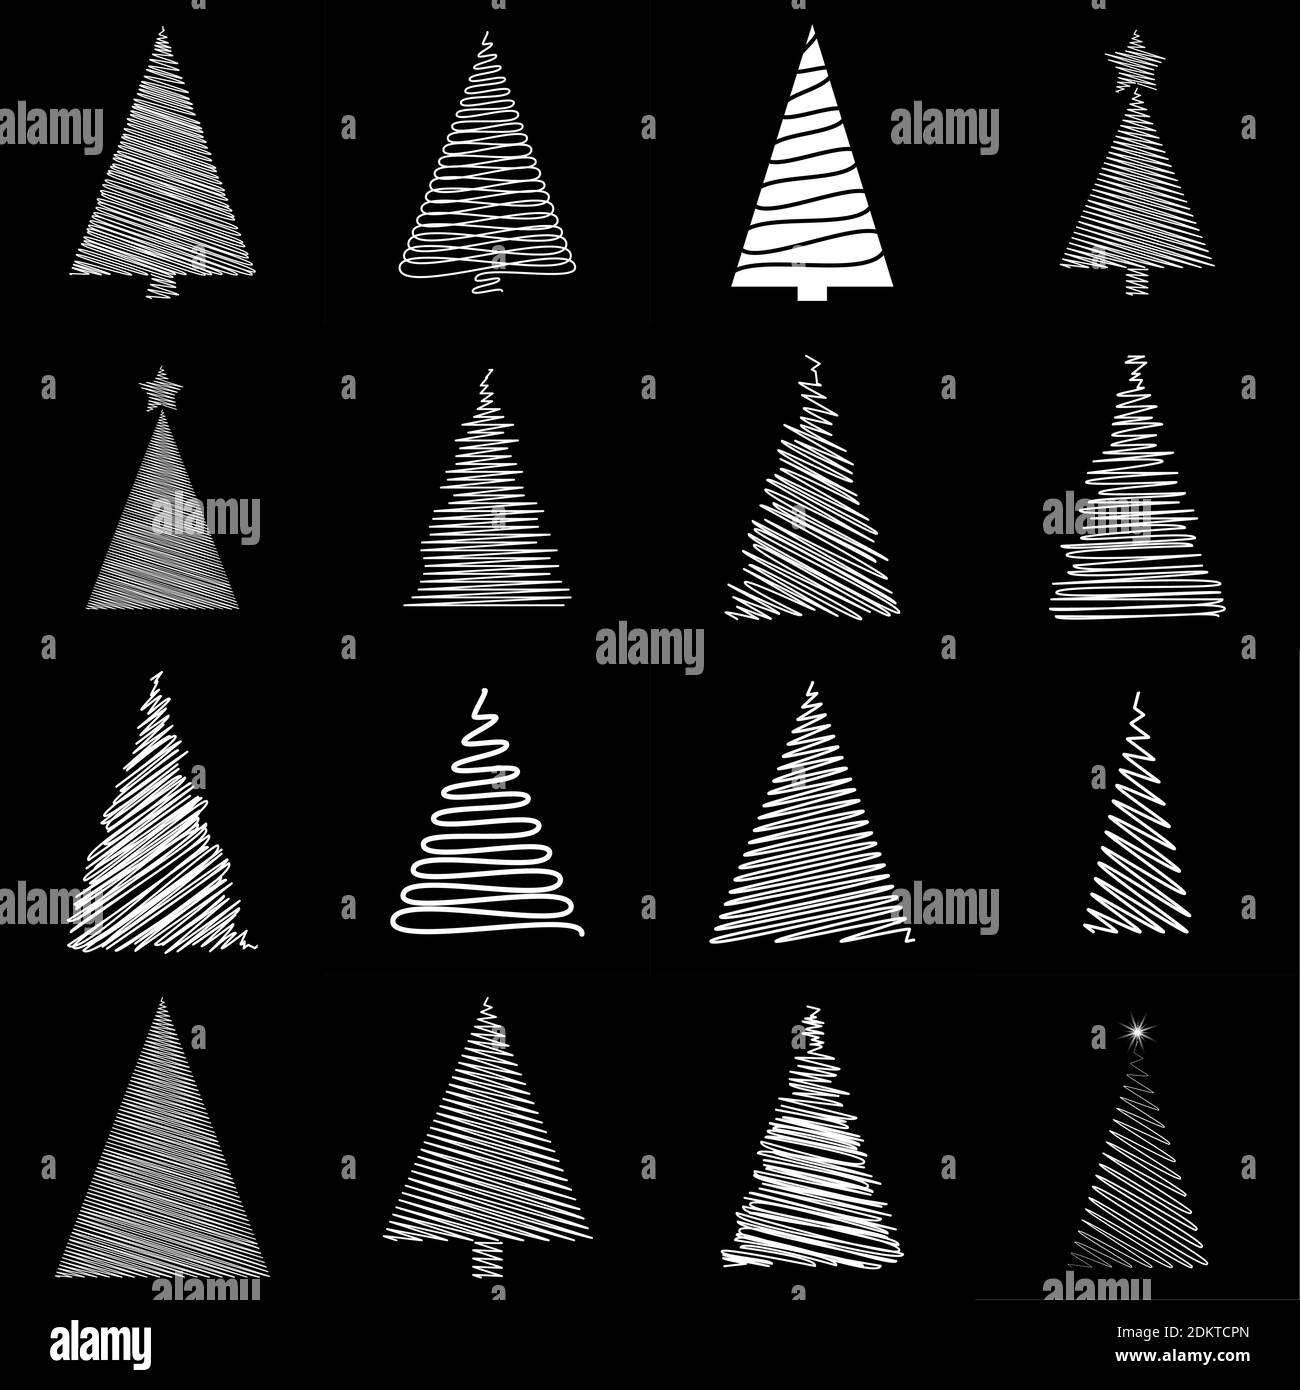 Scribble weihnachtsbaum Set. Doodle Tannenbaum Sammlung. Handgezeichnete festliche Vektorgrafik isoliert auf schwarzem Hintergrund. Weiße kindliche Zeichnung Stock Vektor